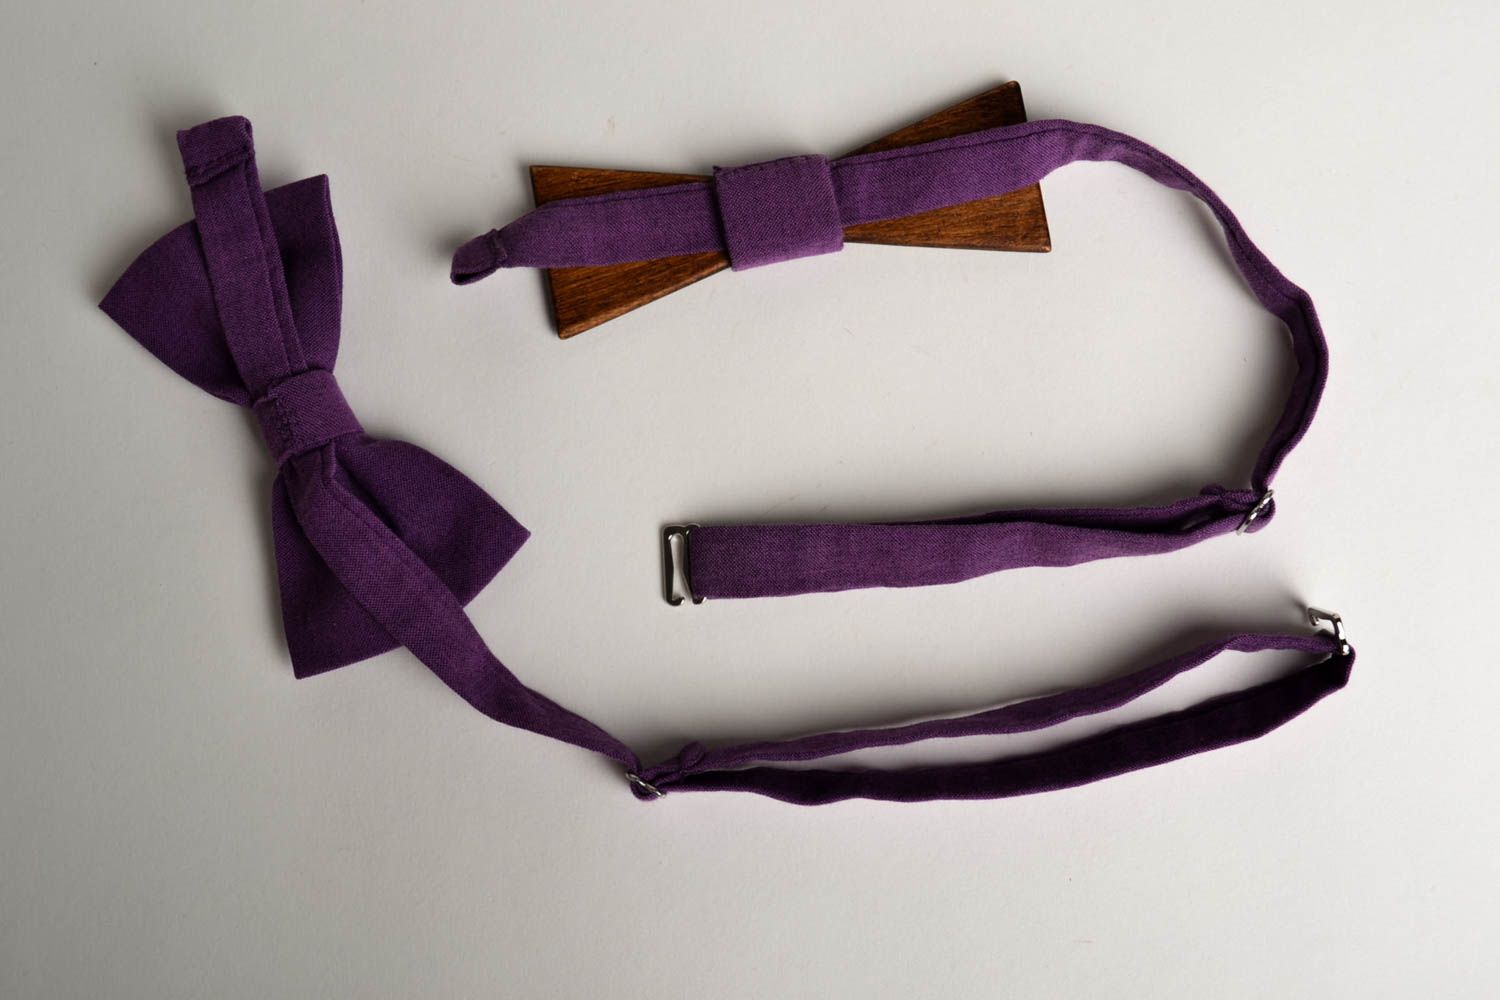 Handmade wooden bow tie designer bow tie men accessories present for boyfriend photo 2